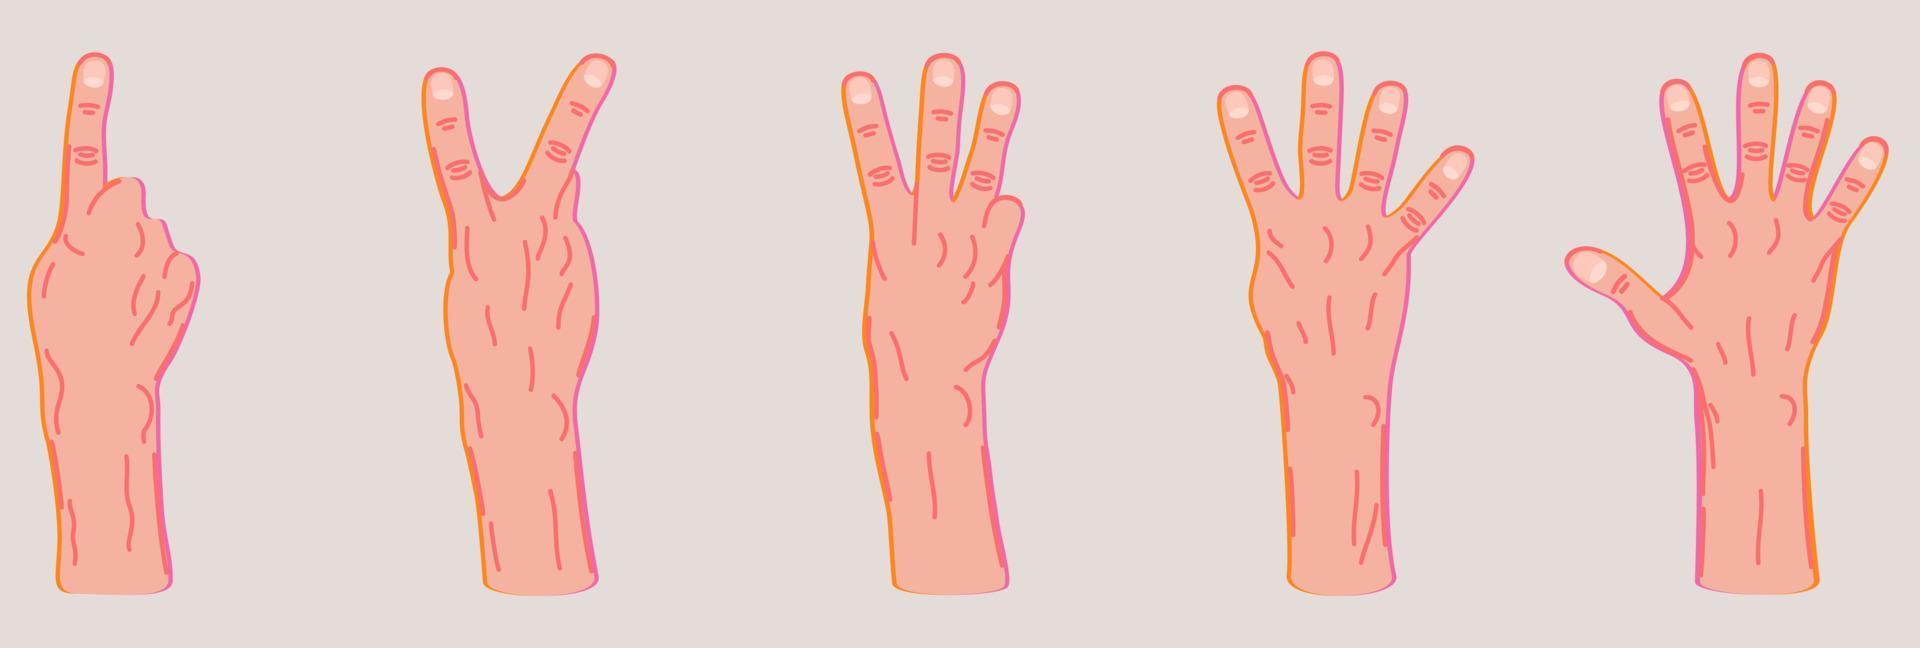 Vector set of different hand gestures.